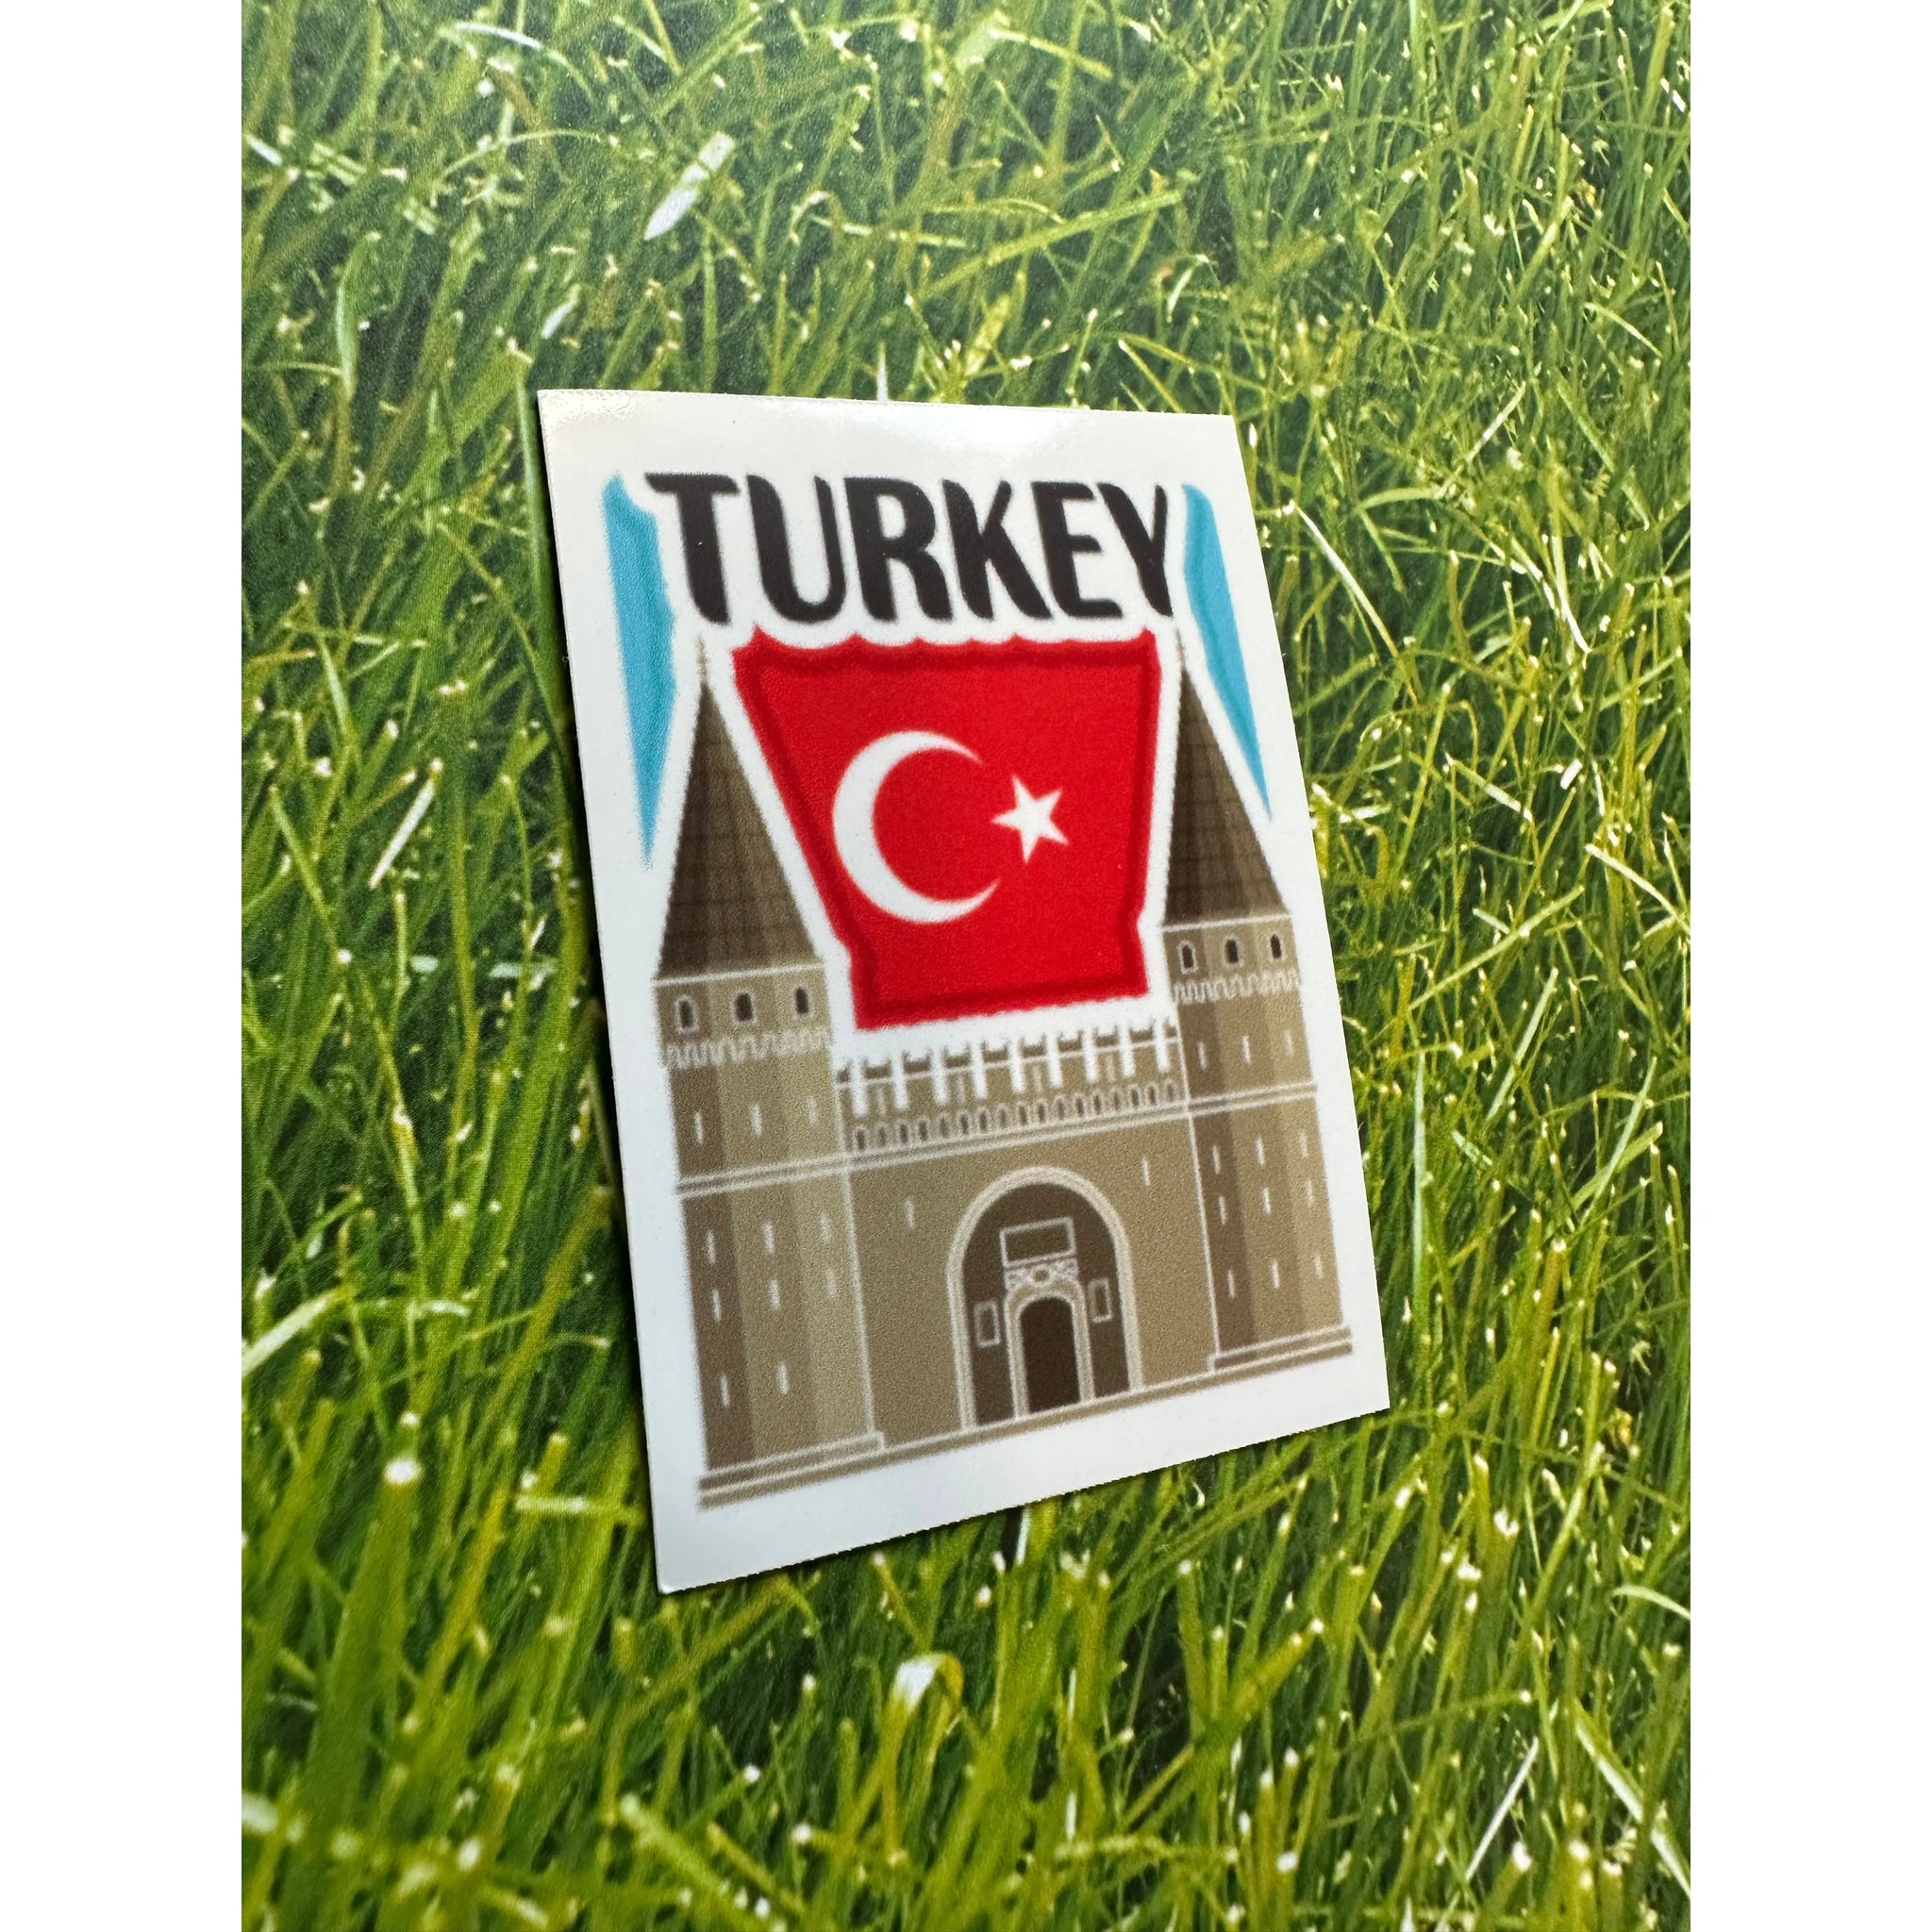 Turkey Vinyl Decal Sticker - The European Gift Store